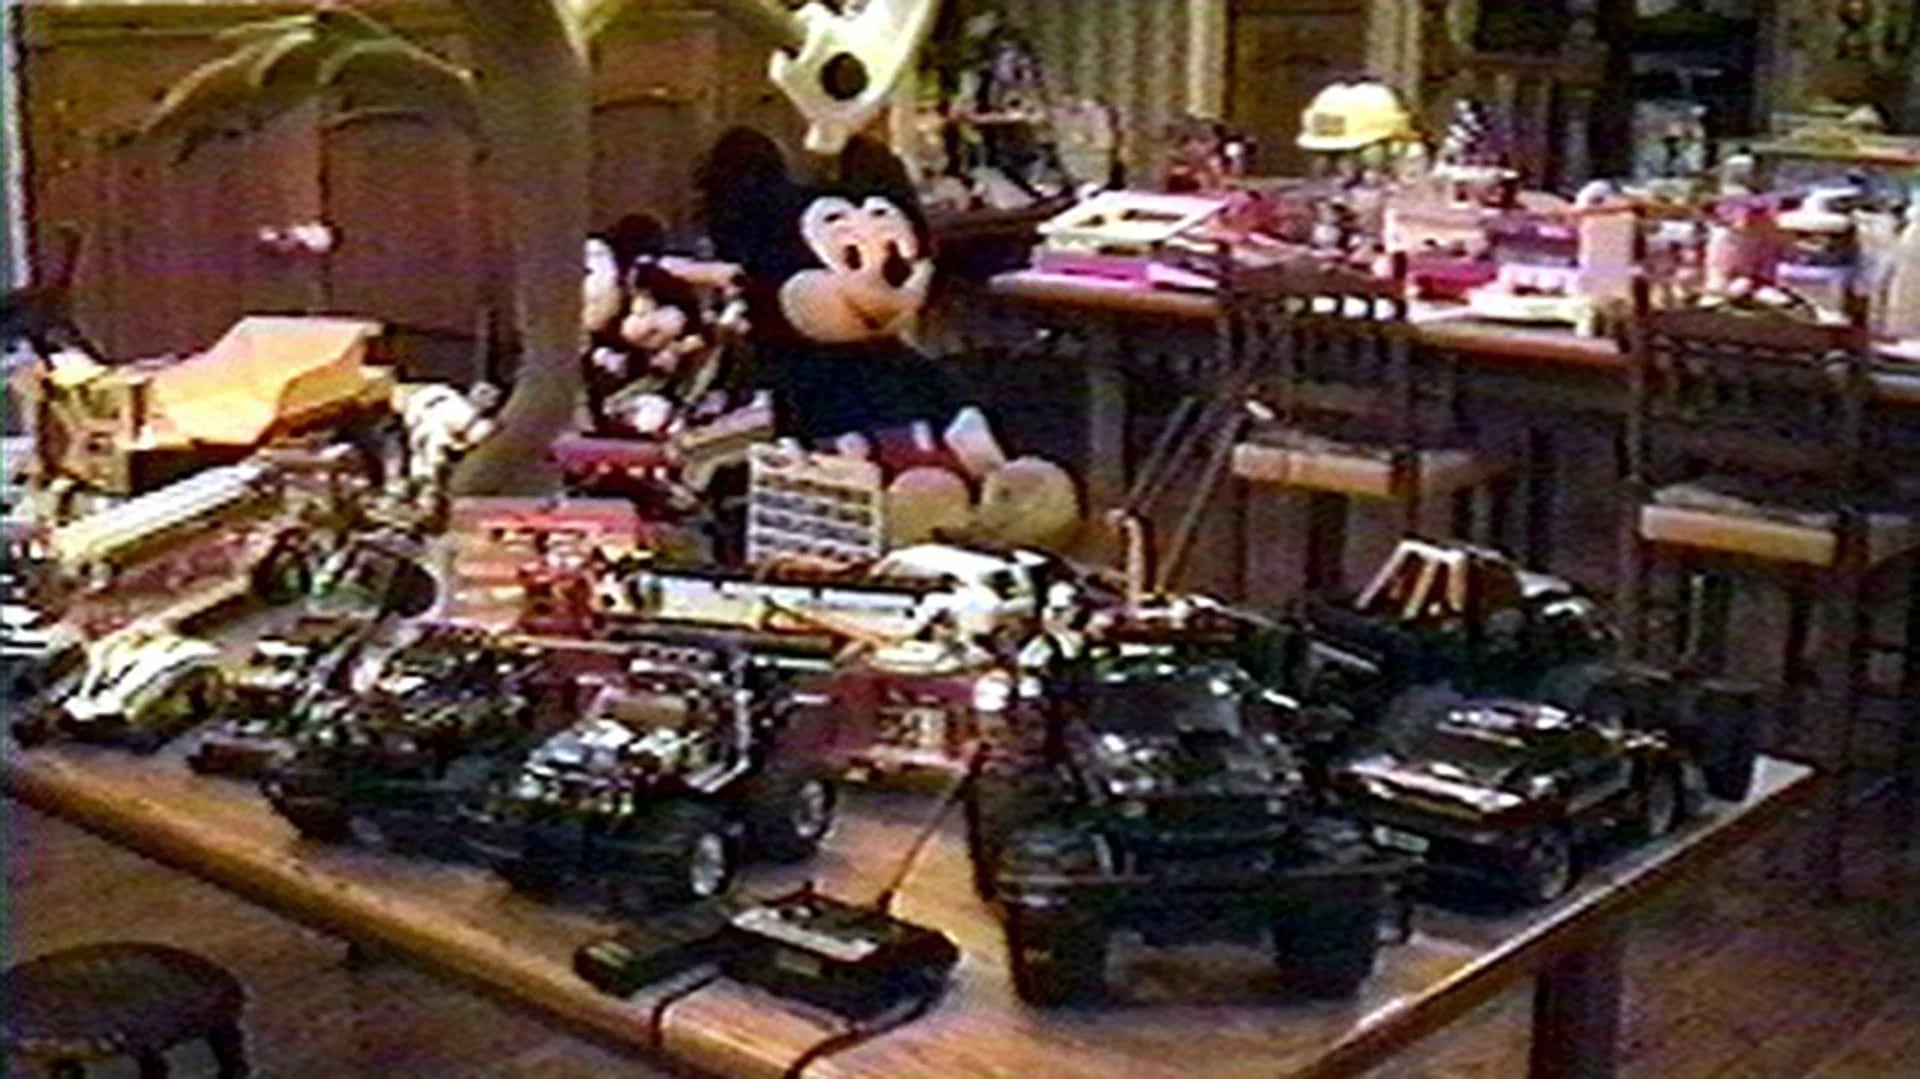 Decenas de juguetes de todo tipo fueron encontrados en su mansión de Santa Bárbara en noviembre de 2003. Se especula que los utilizaba para seducir a los pequeños